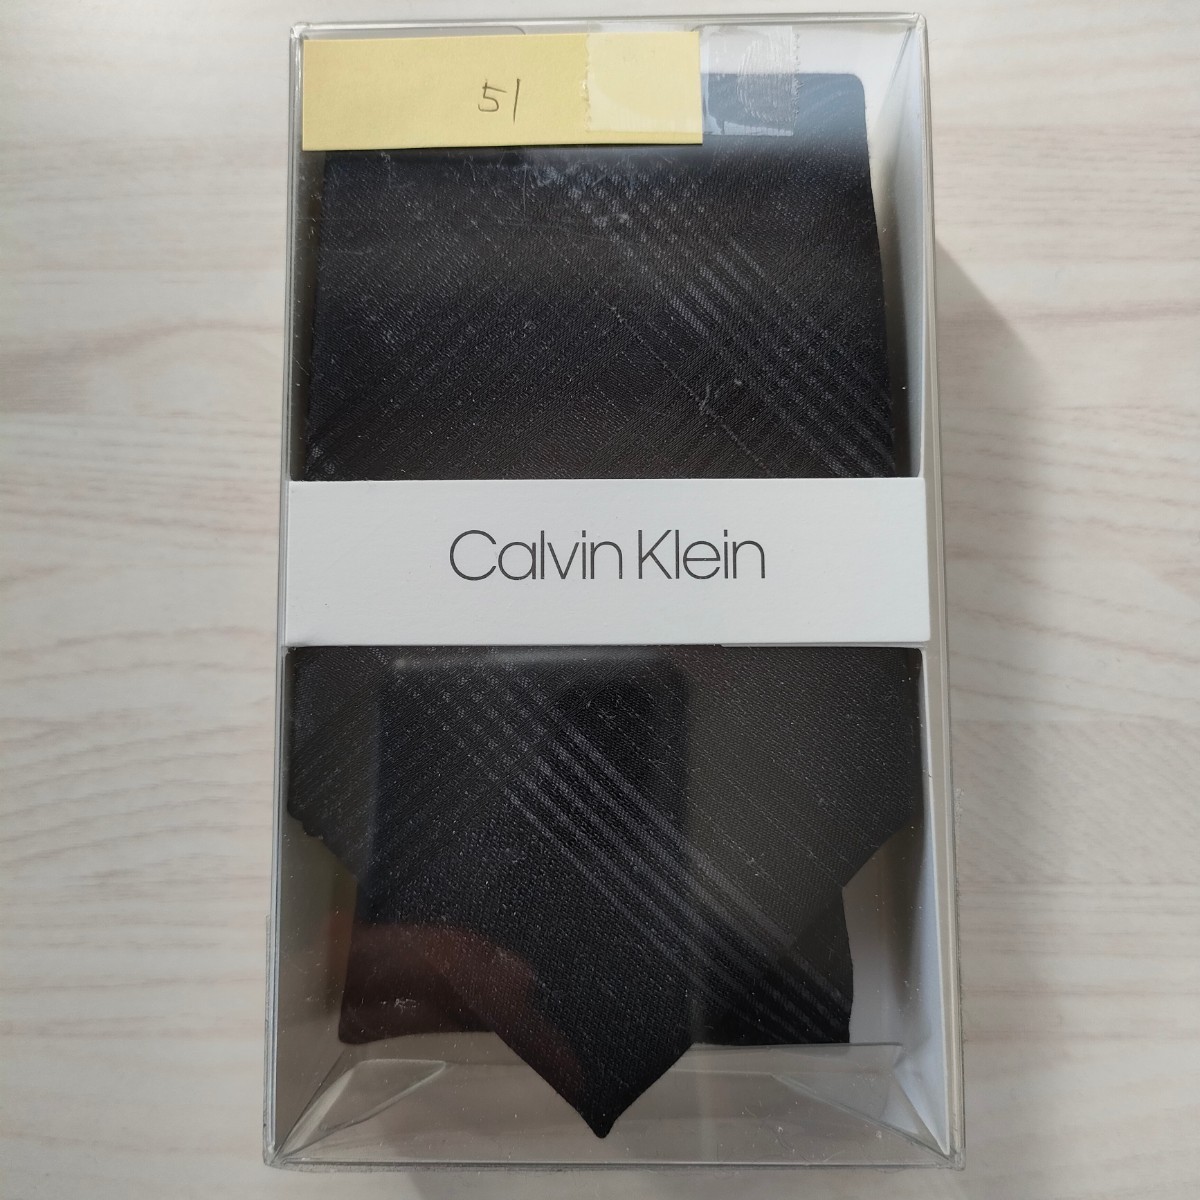  Calvin Klein (Calvin Klein)51 necktie new goods unused box attaching unopened goods accessory box, clear case 